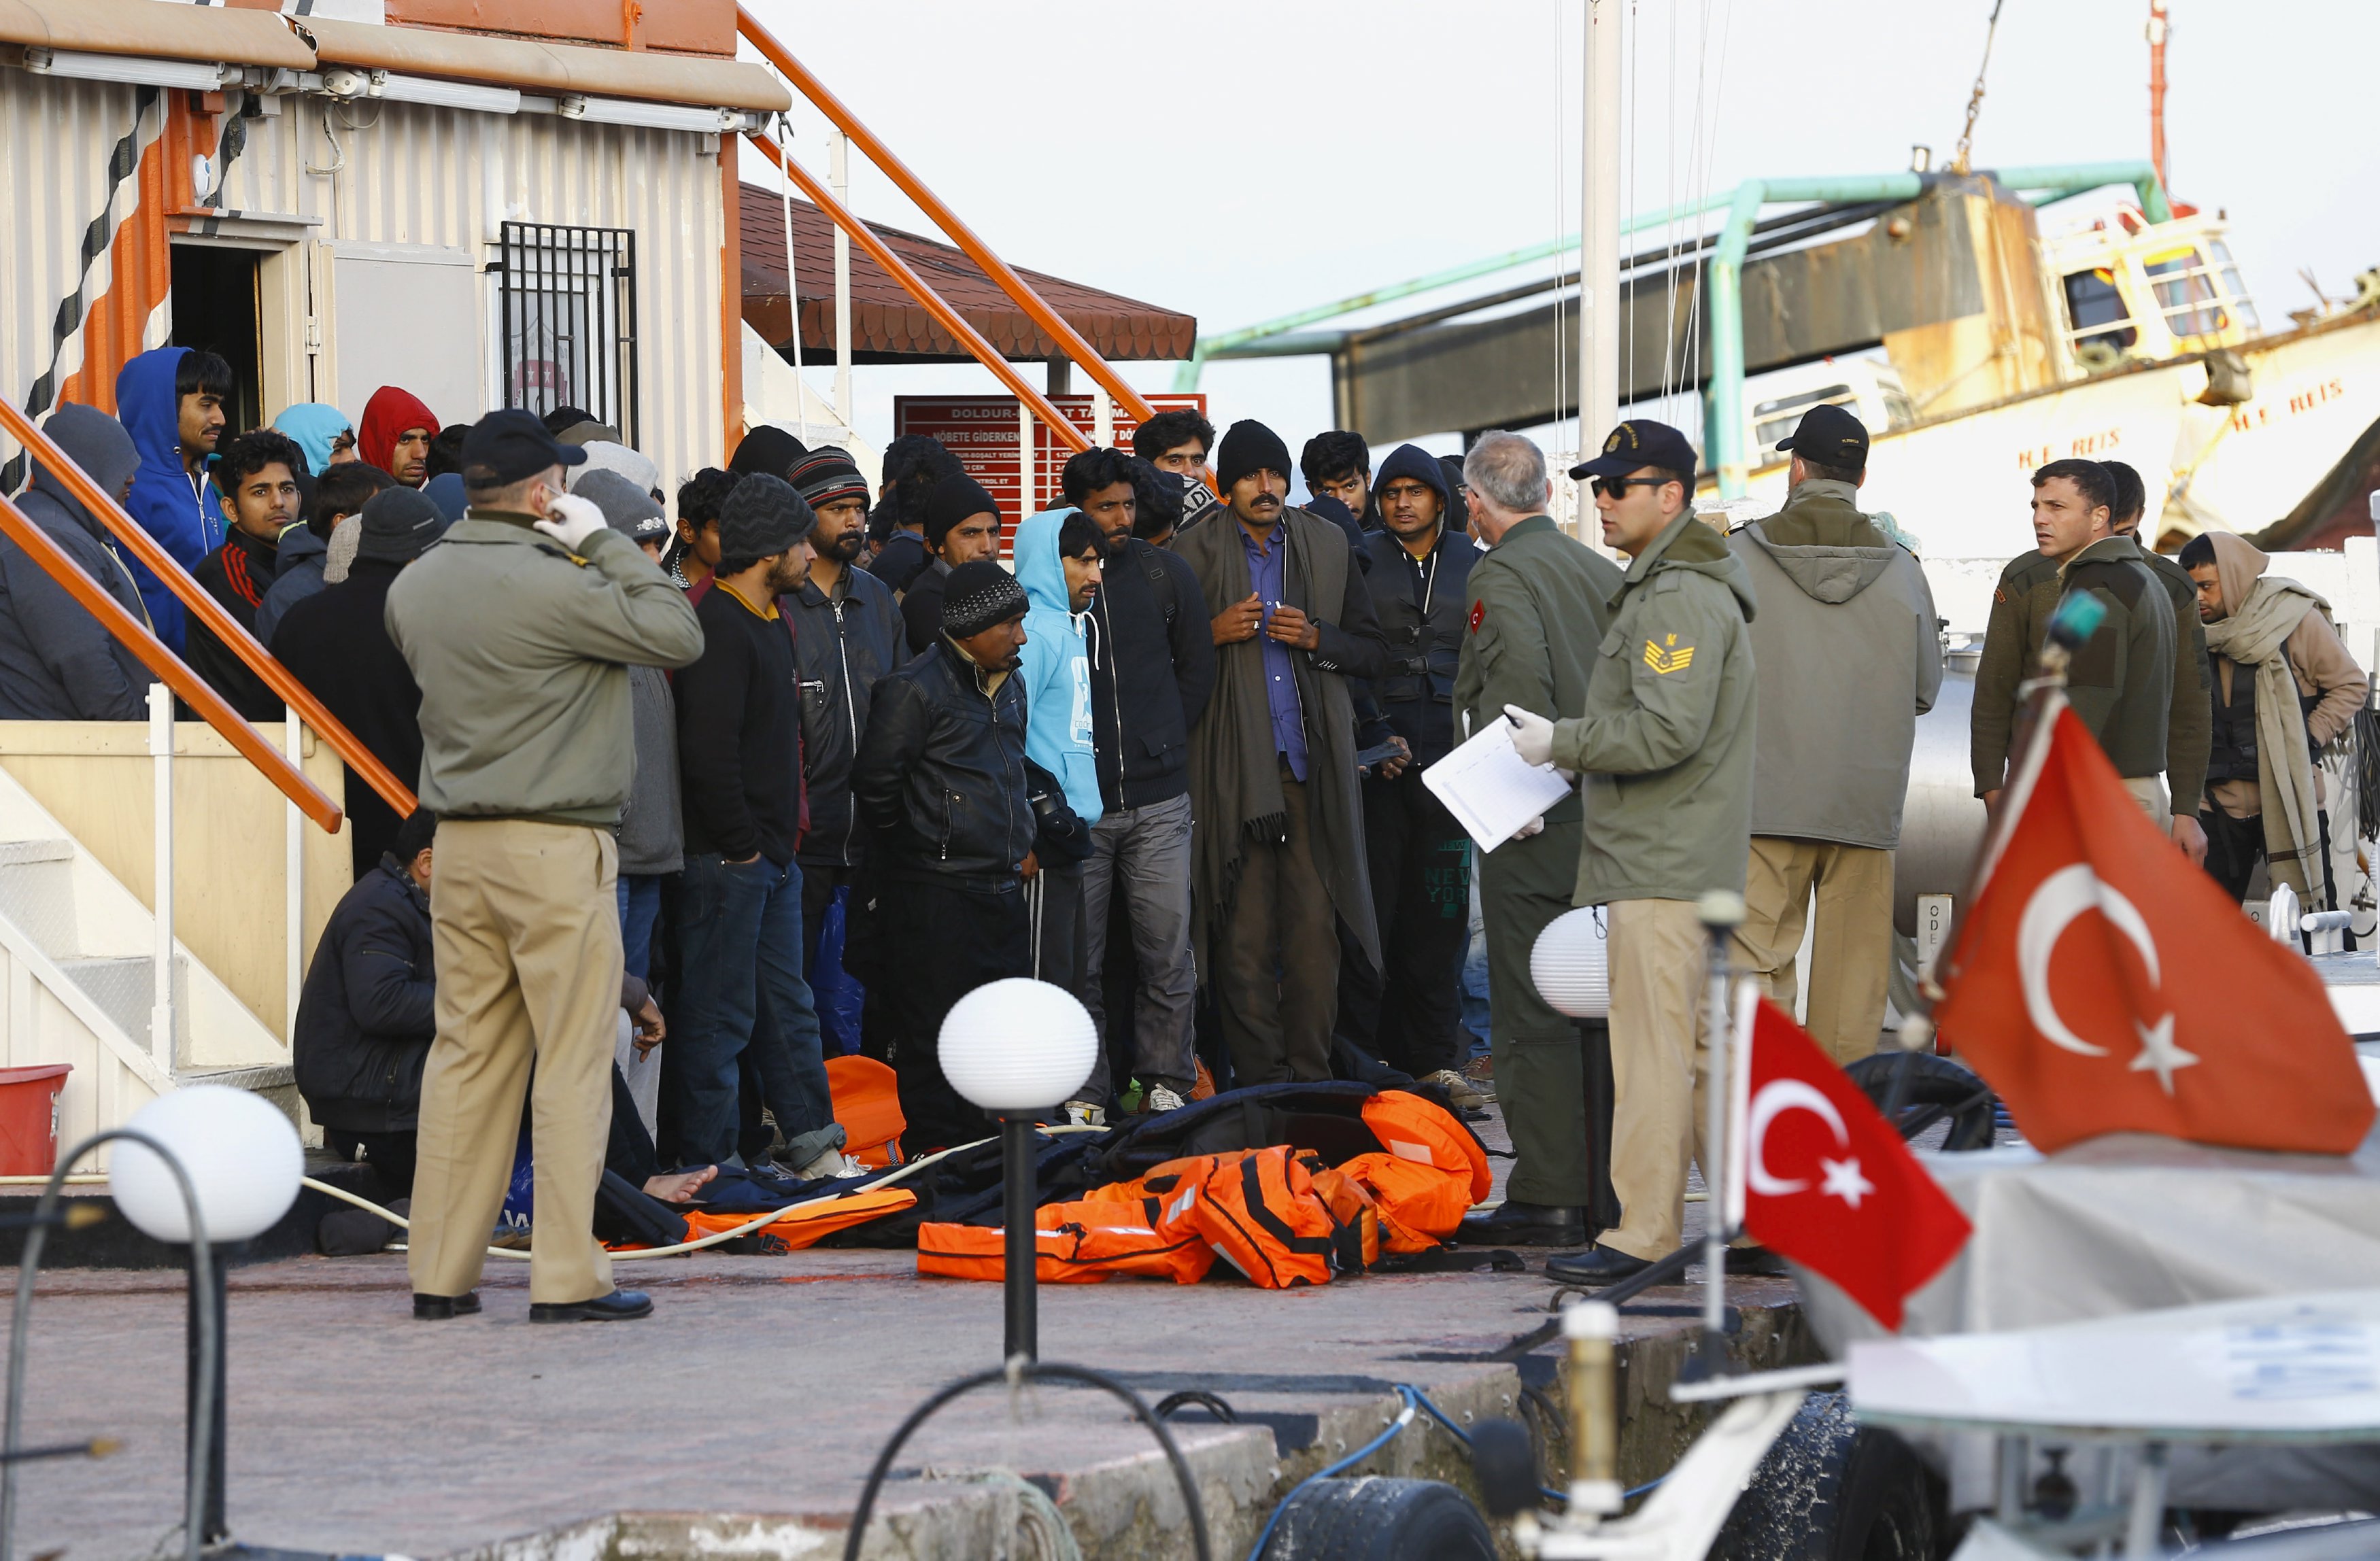 مصير المهاجرين المسلمين في ضوء القرار بحكم القانون رقم 694 في تركيا